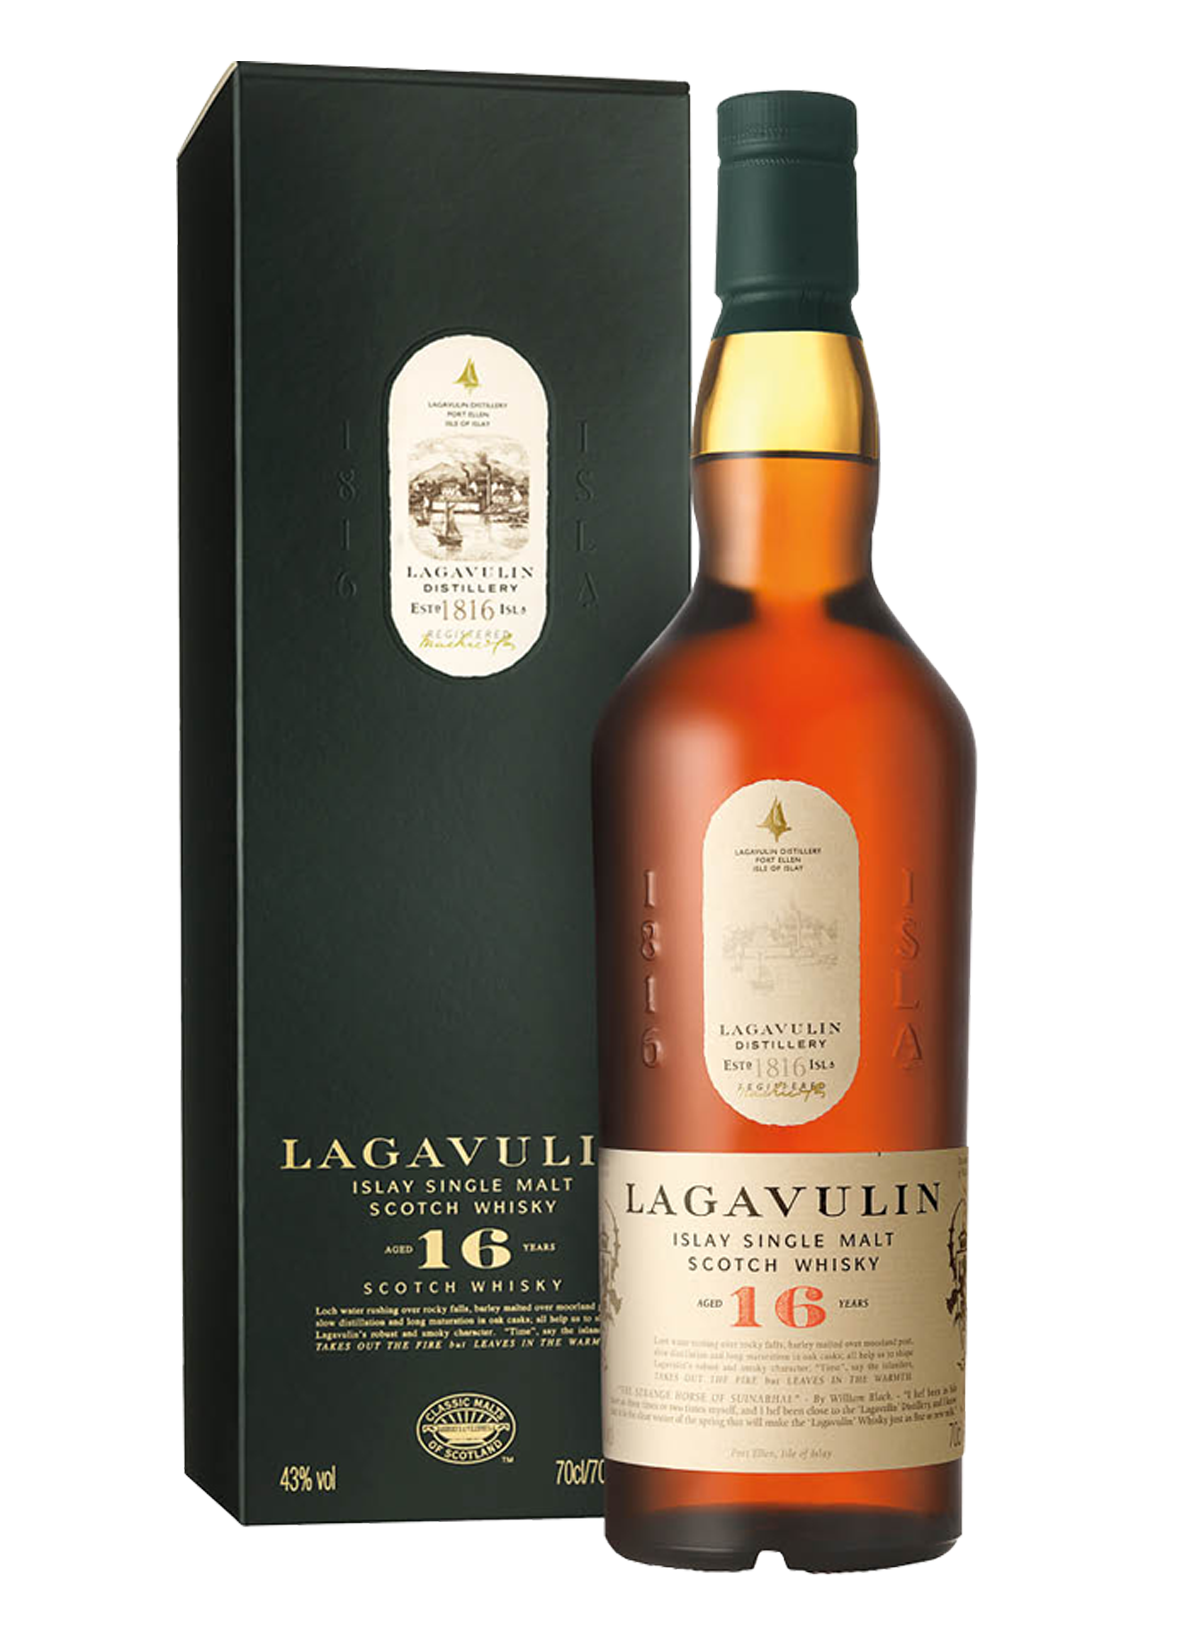 Whisky White Horse Distillers Lagavulin Single Islay Malt 16 ans d'âge